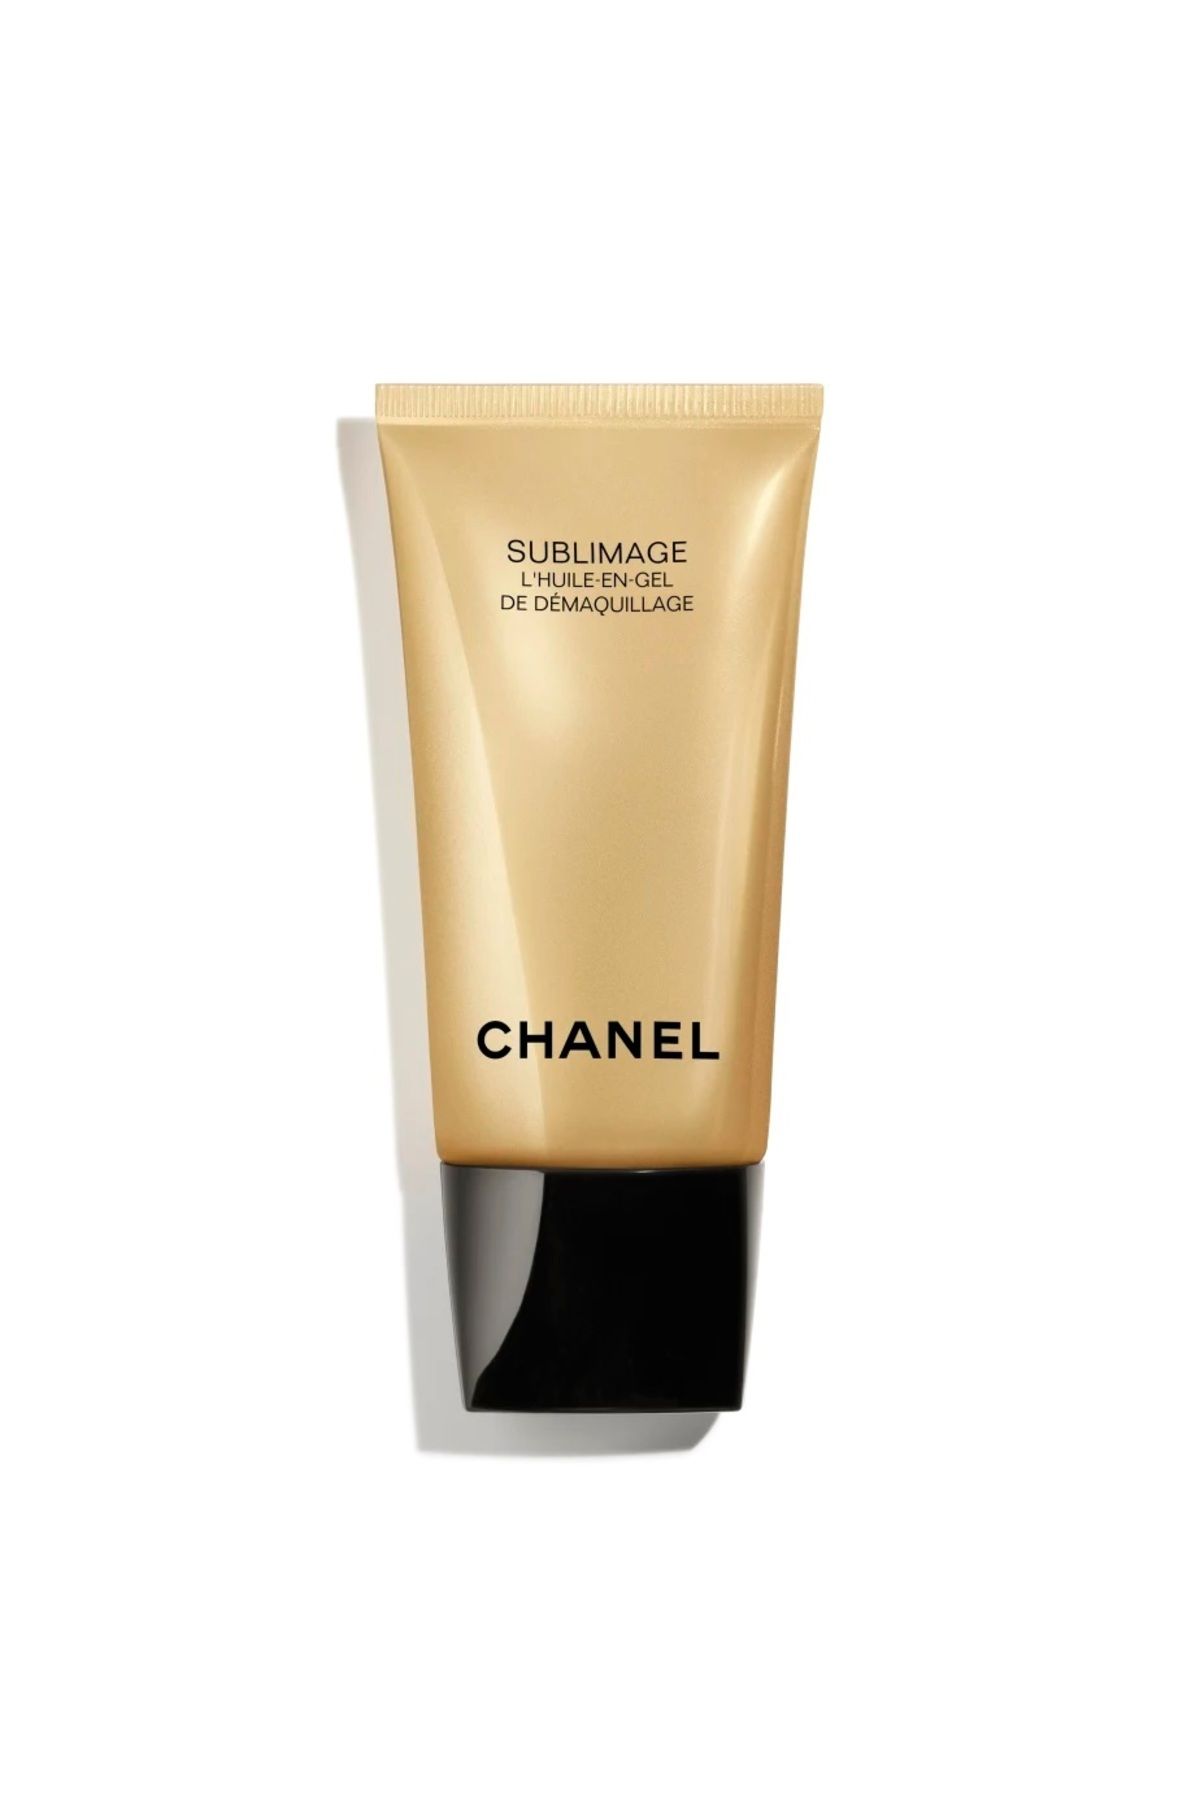 Chanel SUBLIMAGE L'HUILE-EN-GEL DE DÉMAQUILLAGE-Rahatlatıcı Aydınlatıcı Işıltı Verici Yüz Temizleyici 150ml